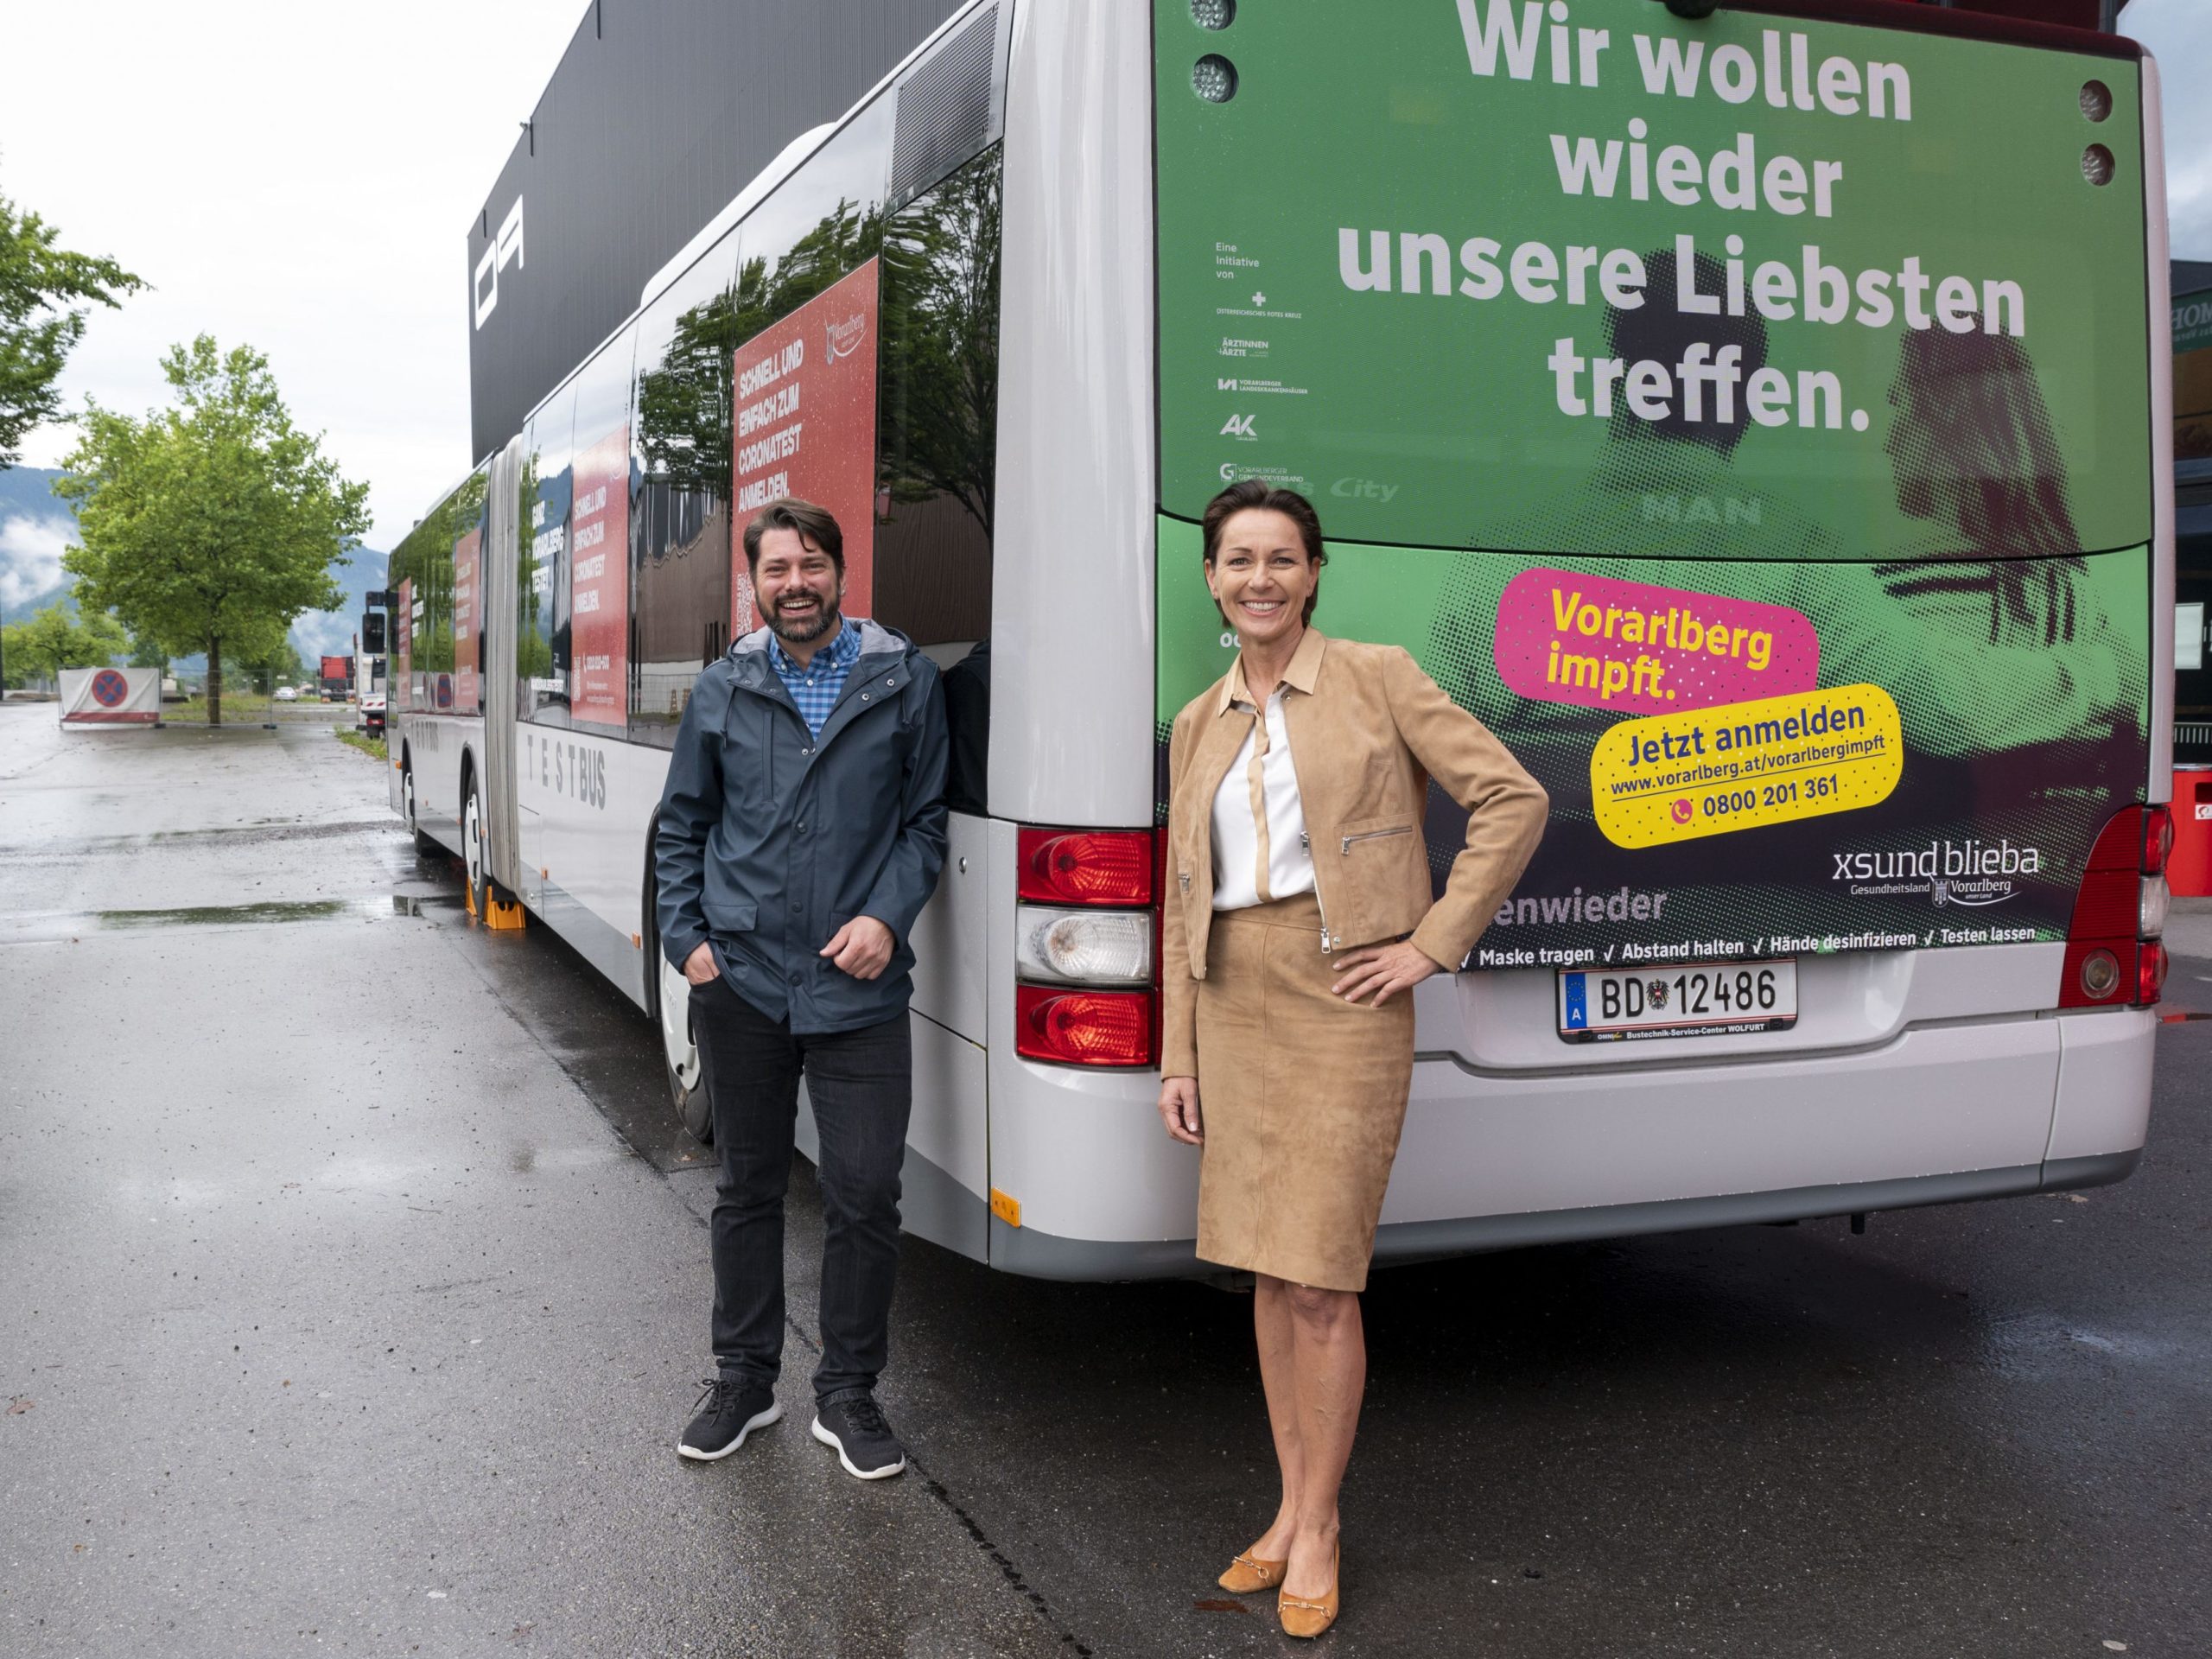 Corona: Vorarlberg setzt am Sonntag Impfbus ein